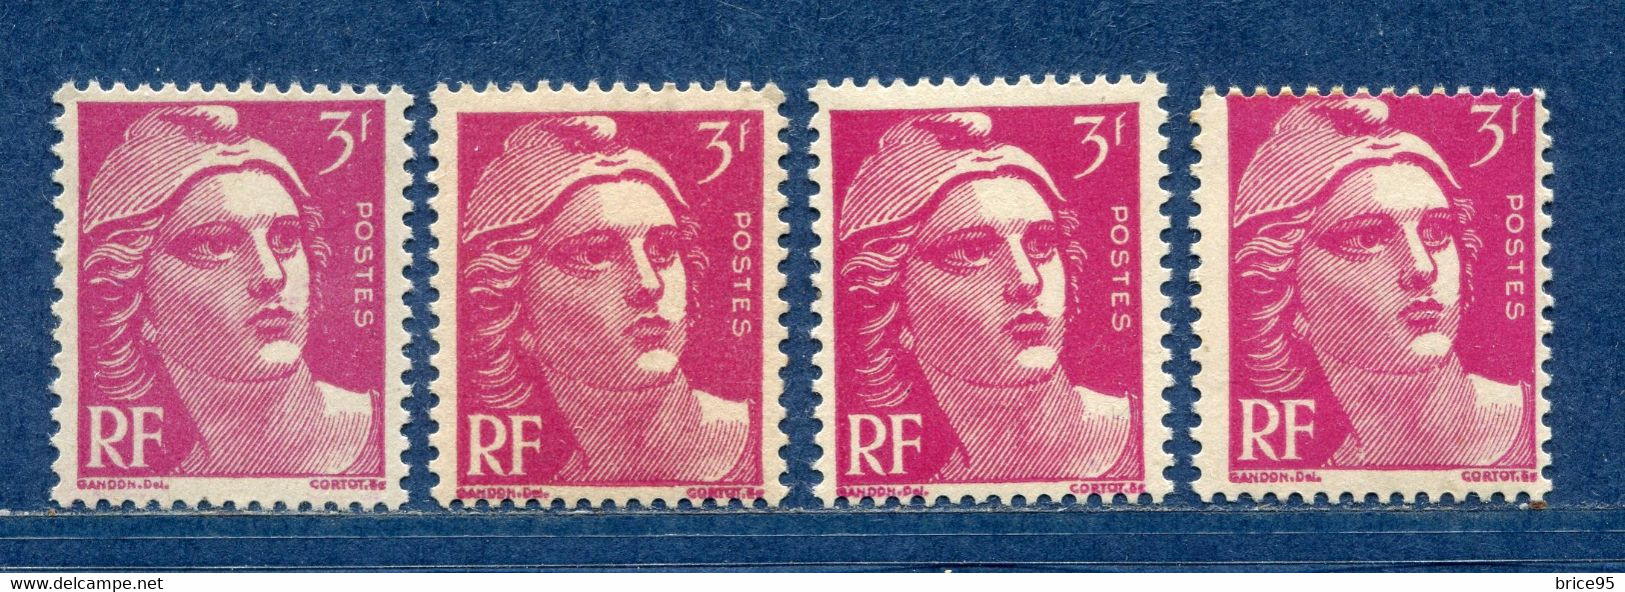 ⭐ France - Variété - YT N° 806 - Couleurs - Pétouilles - Neuf Sans Charnière - 1948 ⭐ - Unused Stamps